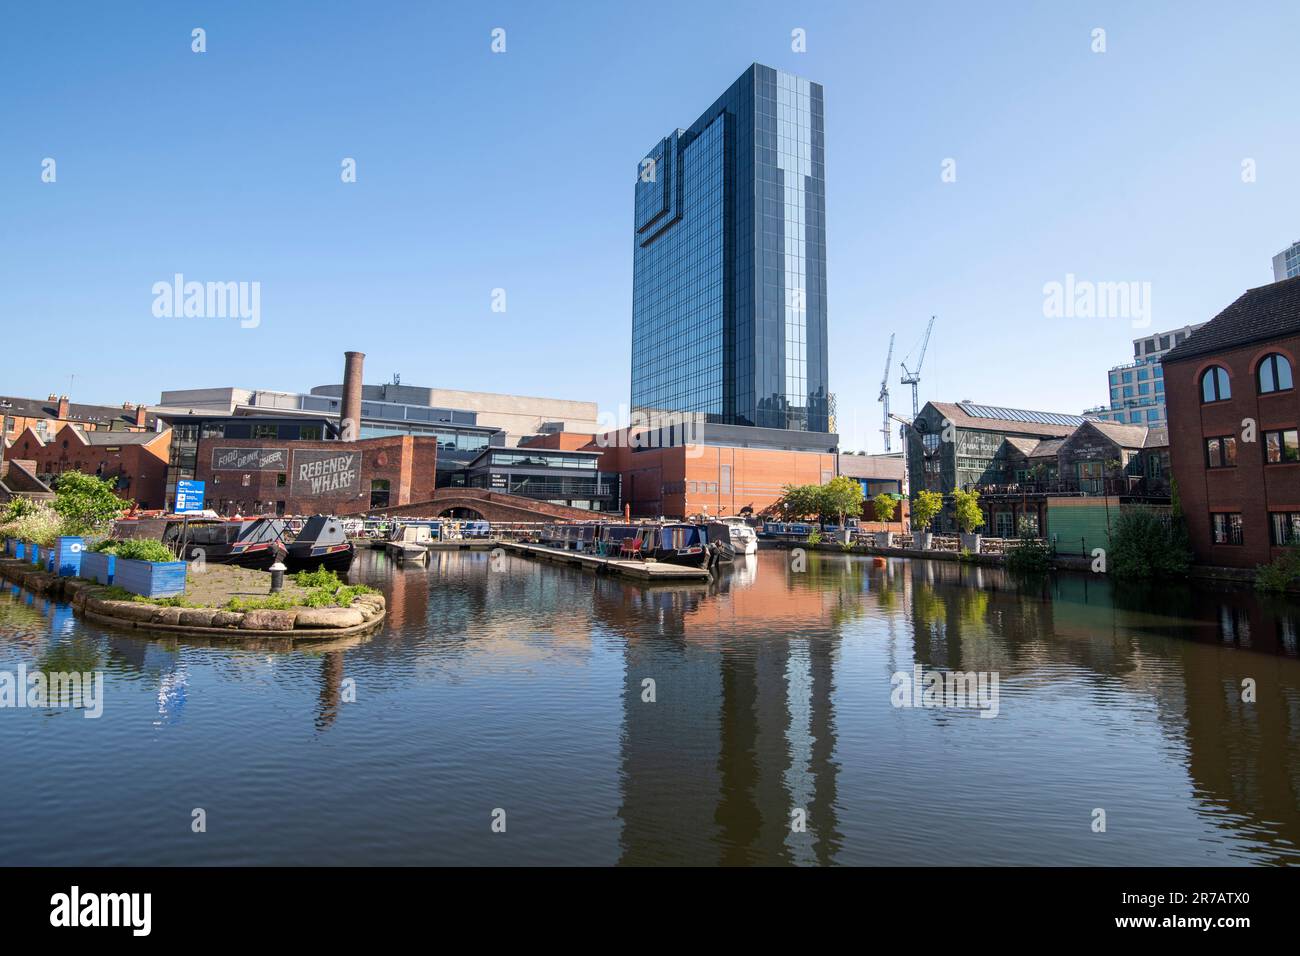 Sonnigen sommermorgen am Gas Street Basin, Birmingham West Midlands England Großbritannien Stockfoto